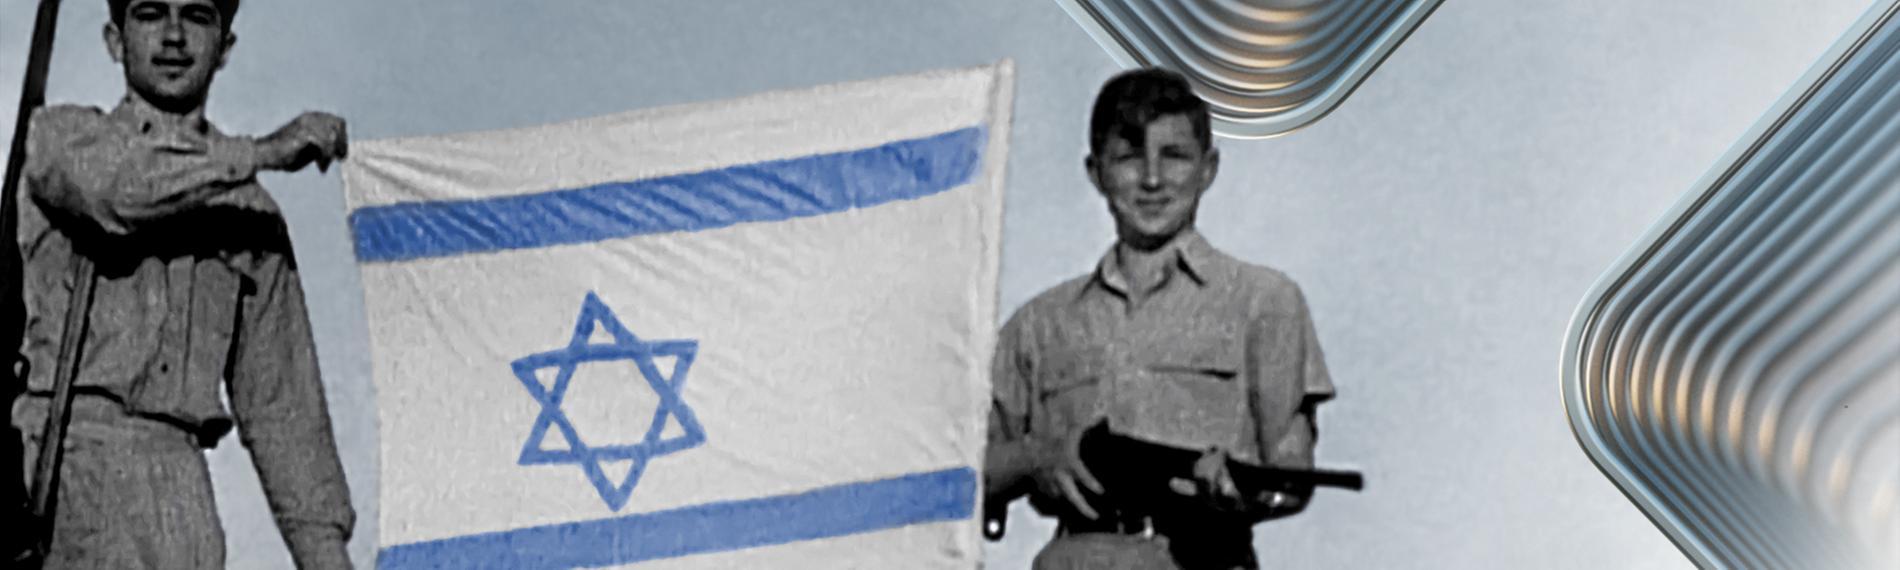 s/w: Zwei bewaffnete junge Männer mit einer Israel-Flagge